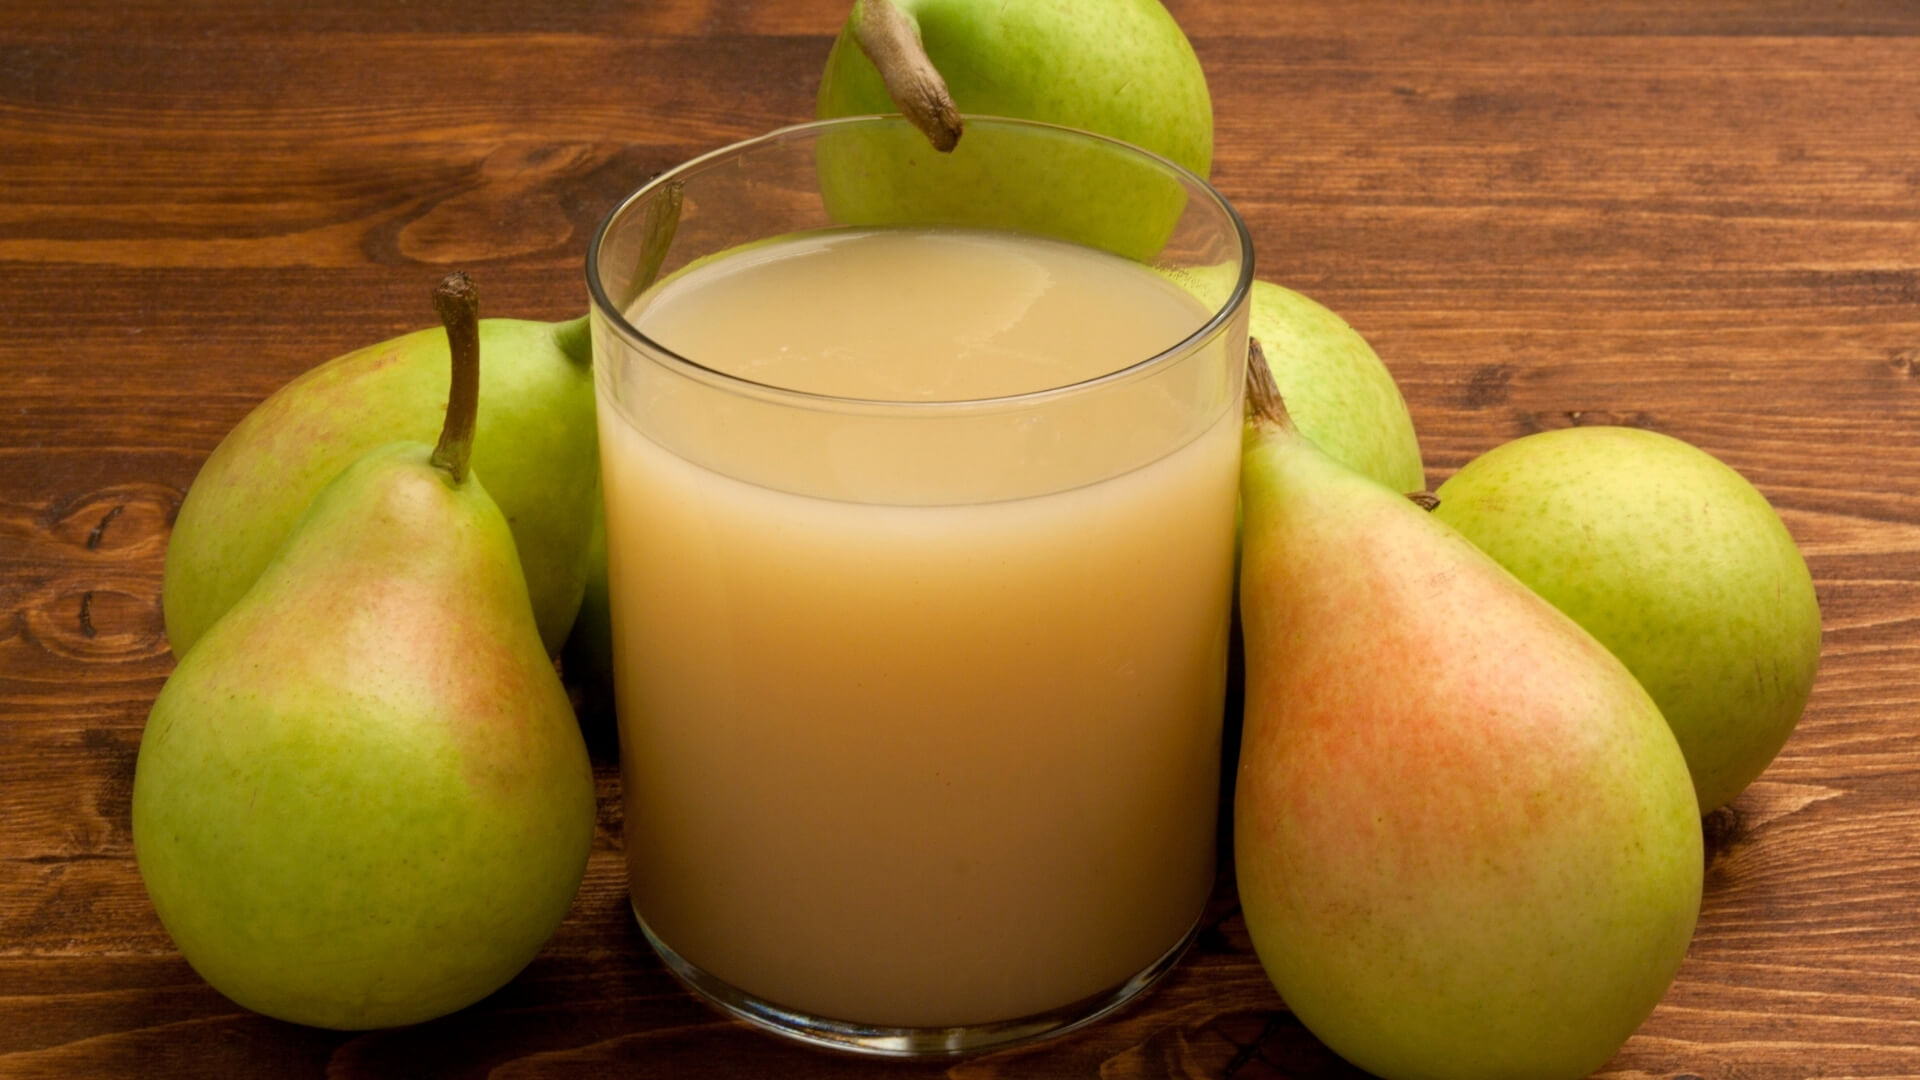 Le pere da bere: succhi e frullati alla pera